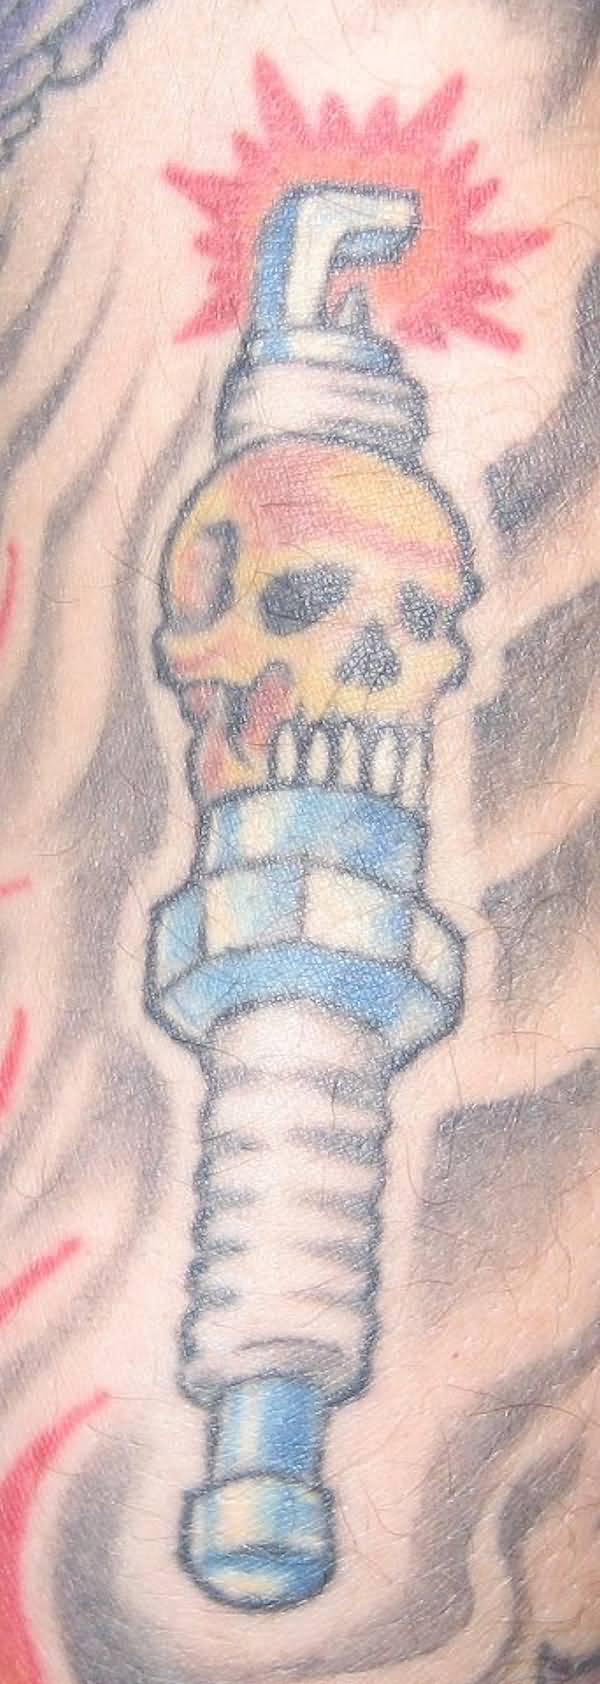 Skull Spark Plug Tattoo